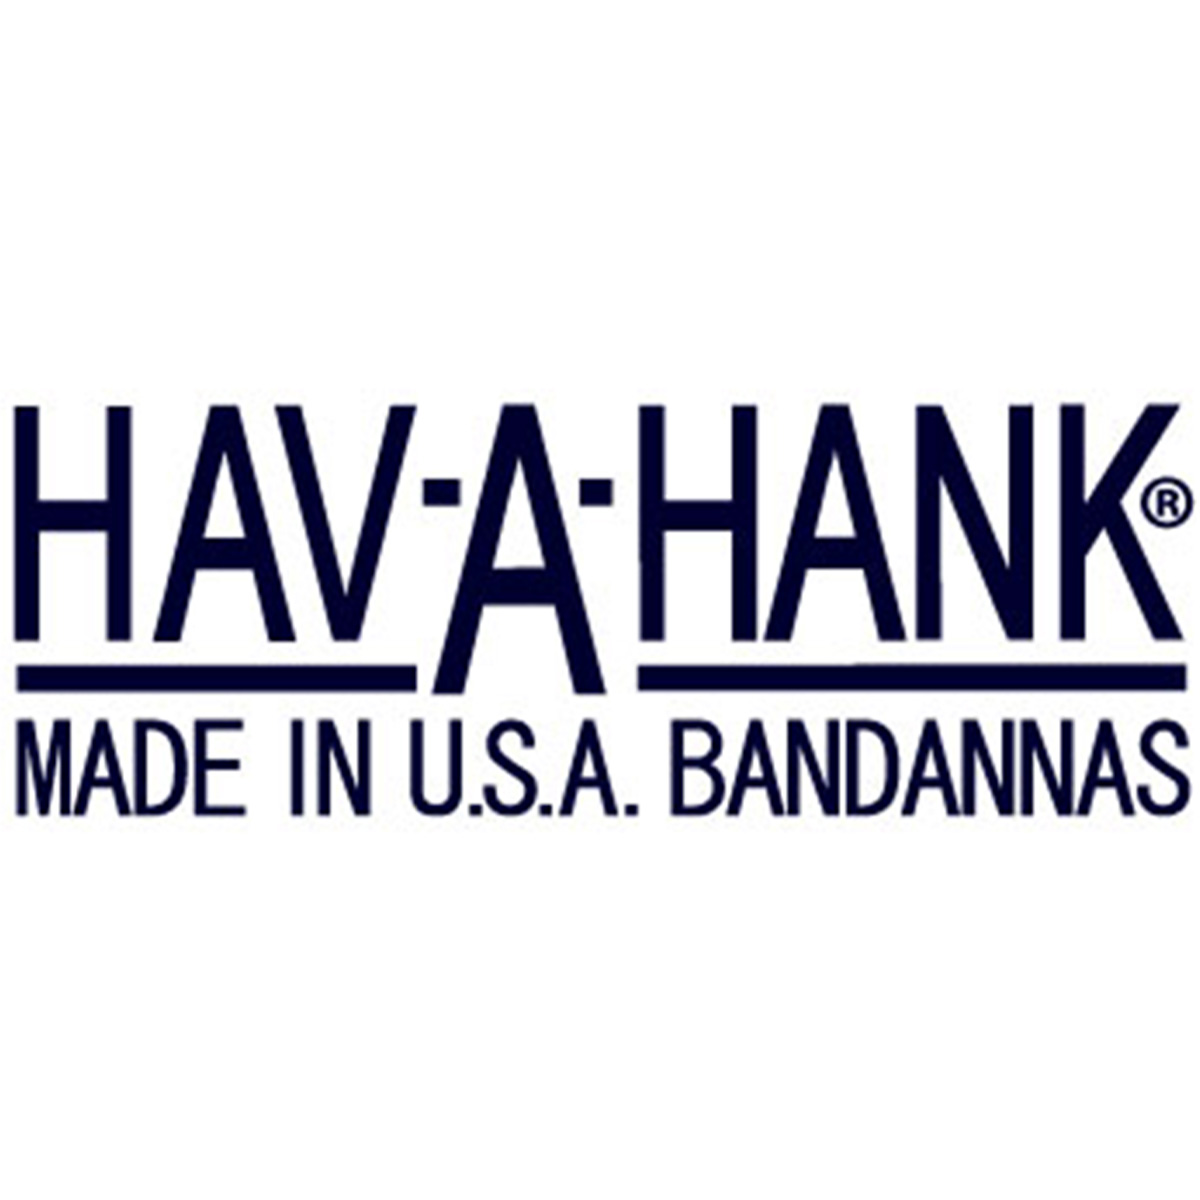 HAV-A-HANK